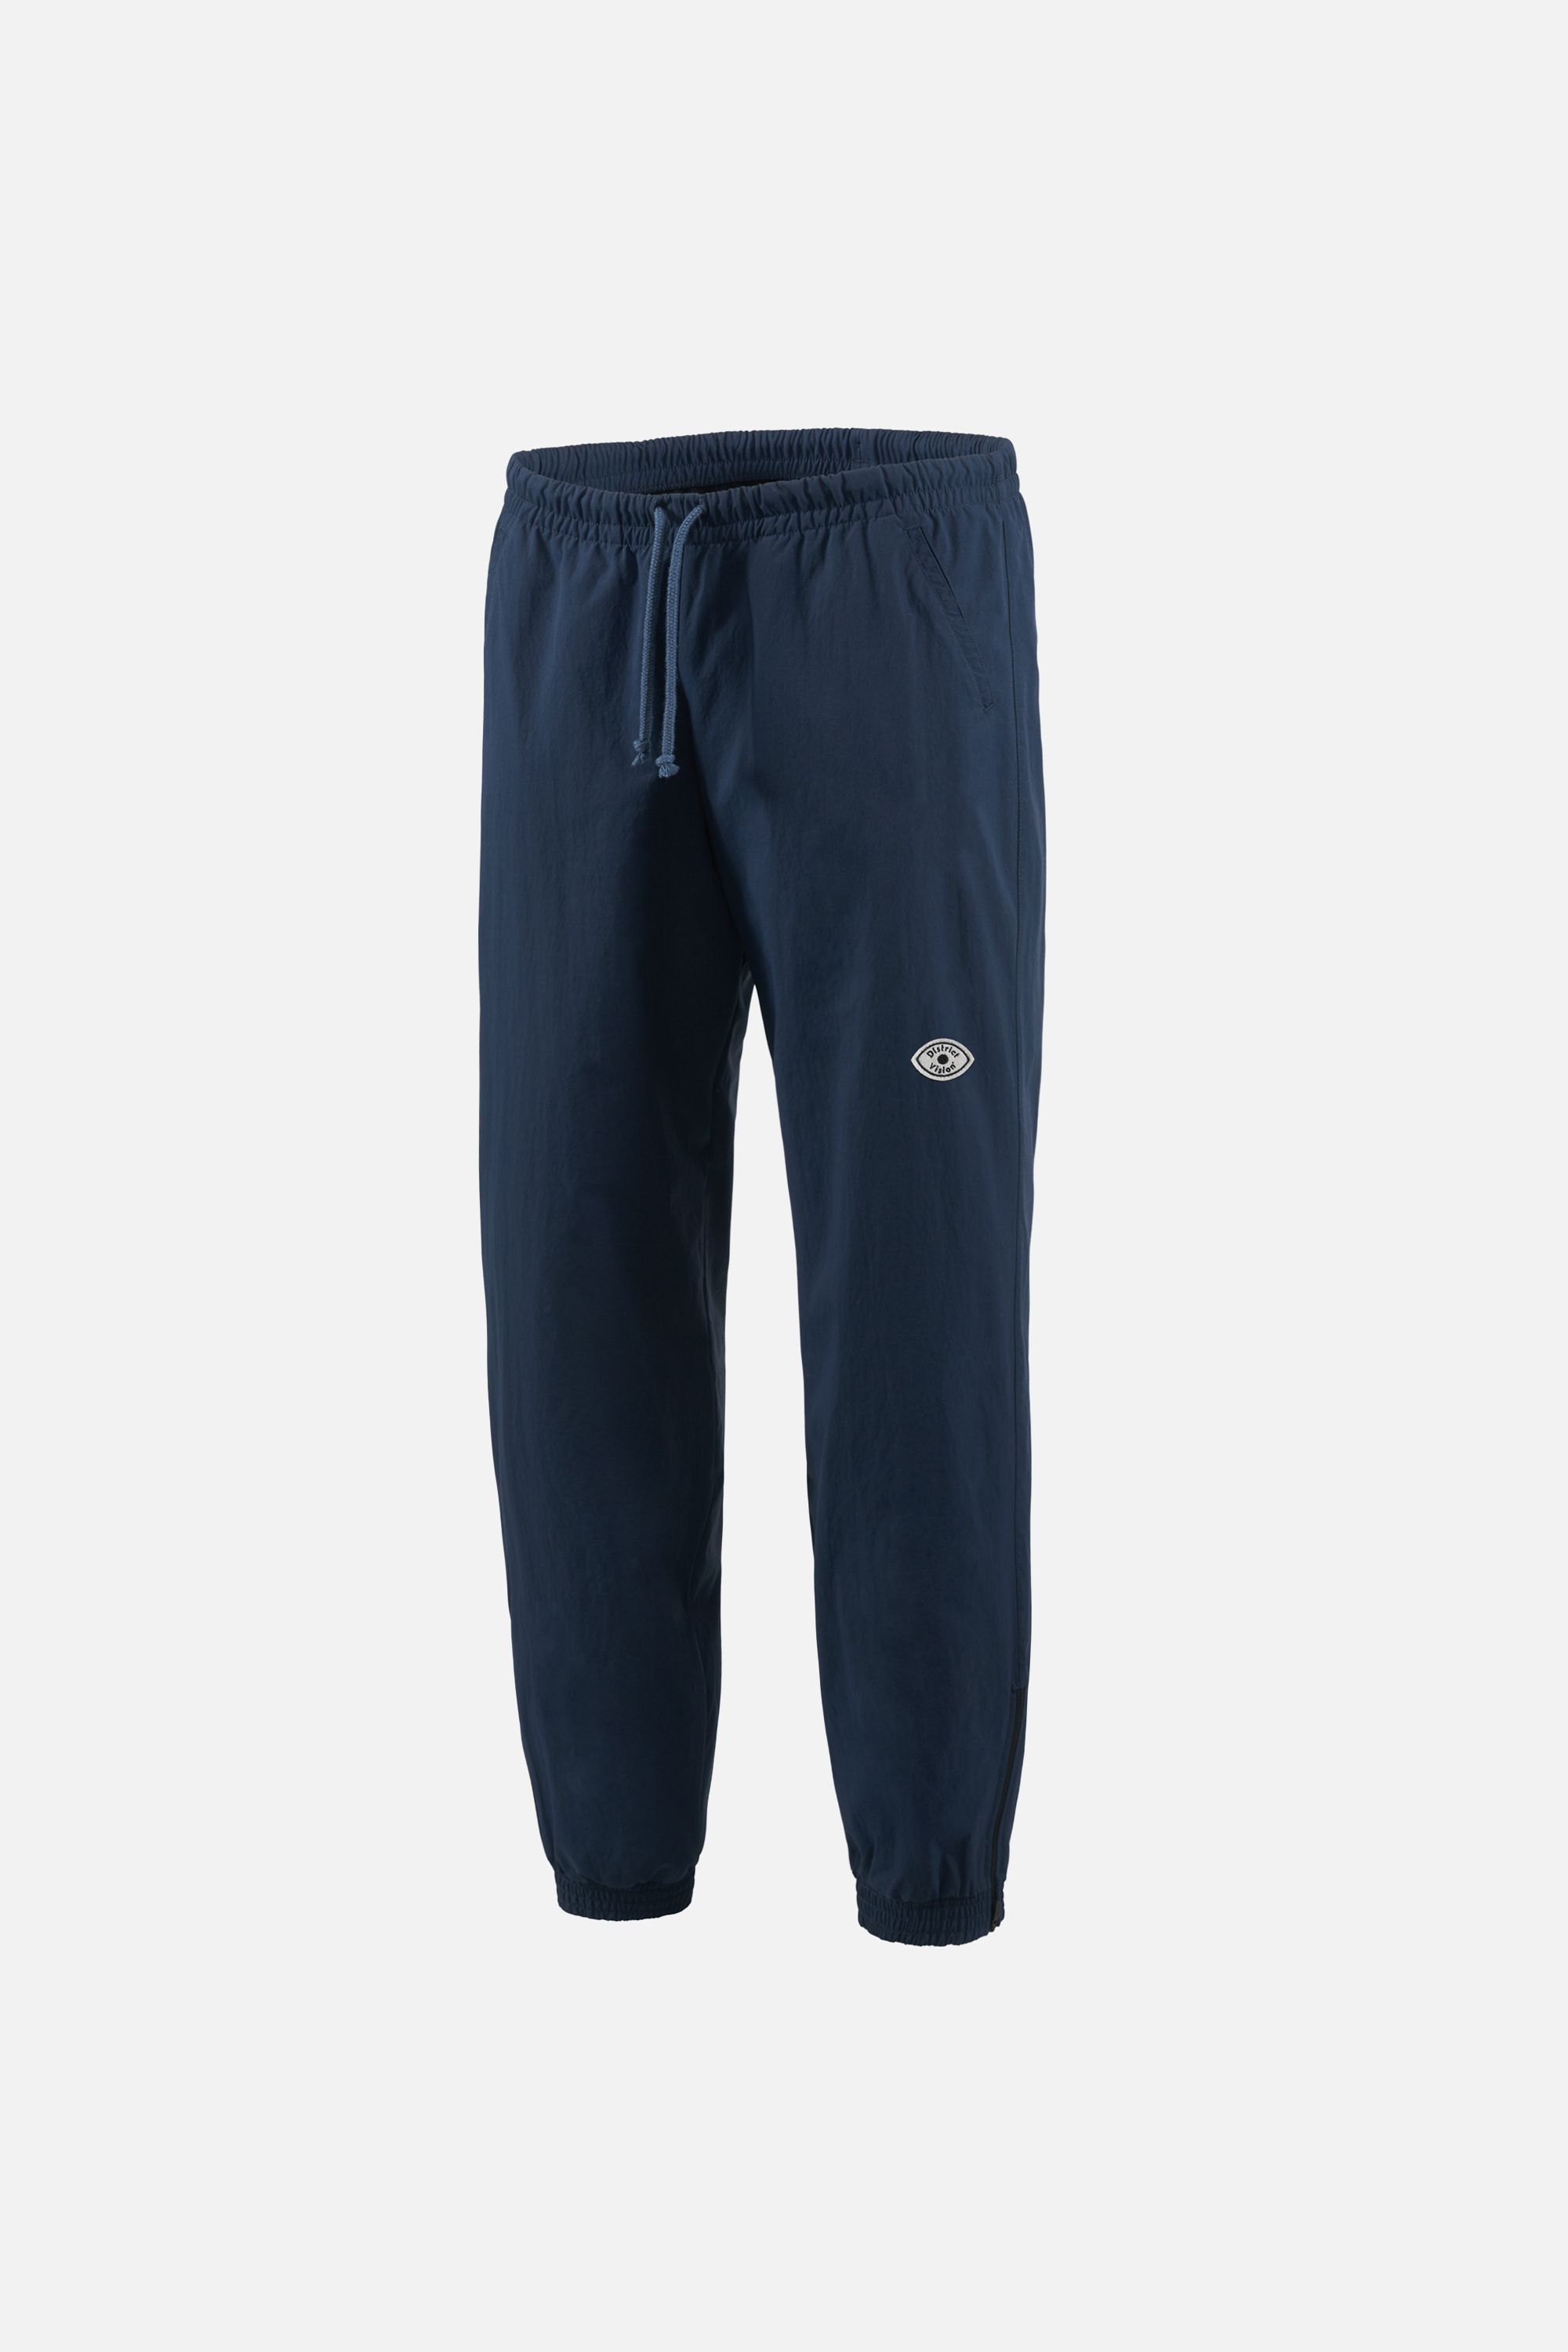 Dark Navy Blue Nike Nylon Track Pants 